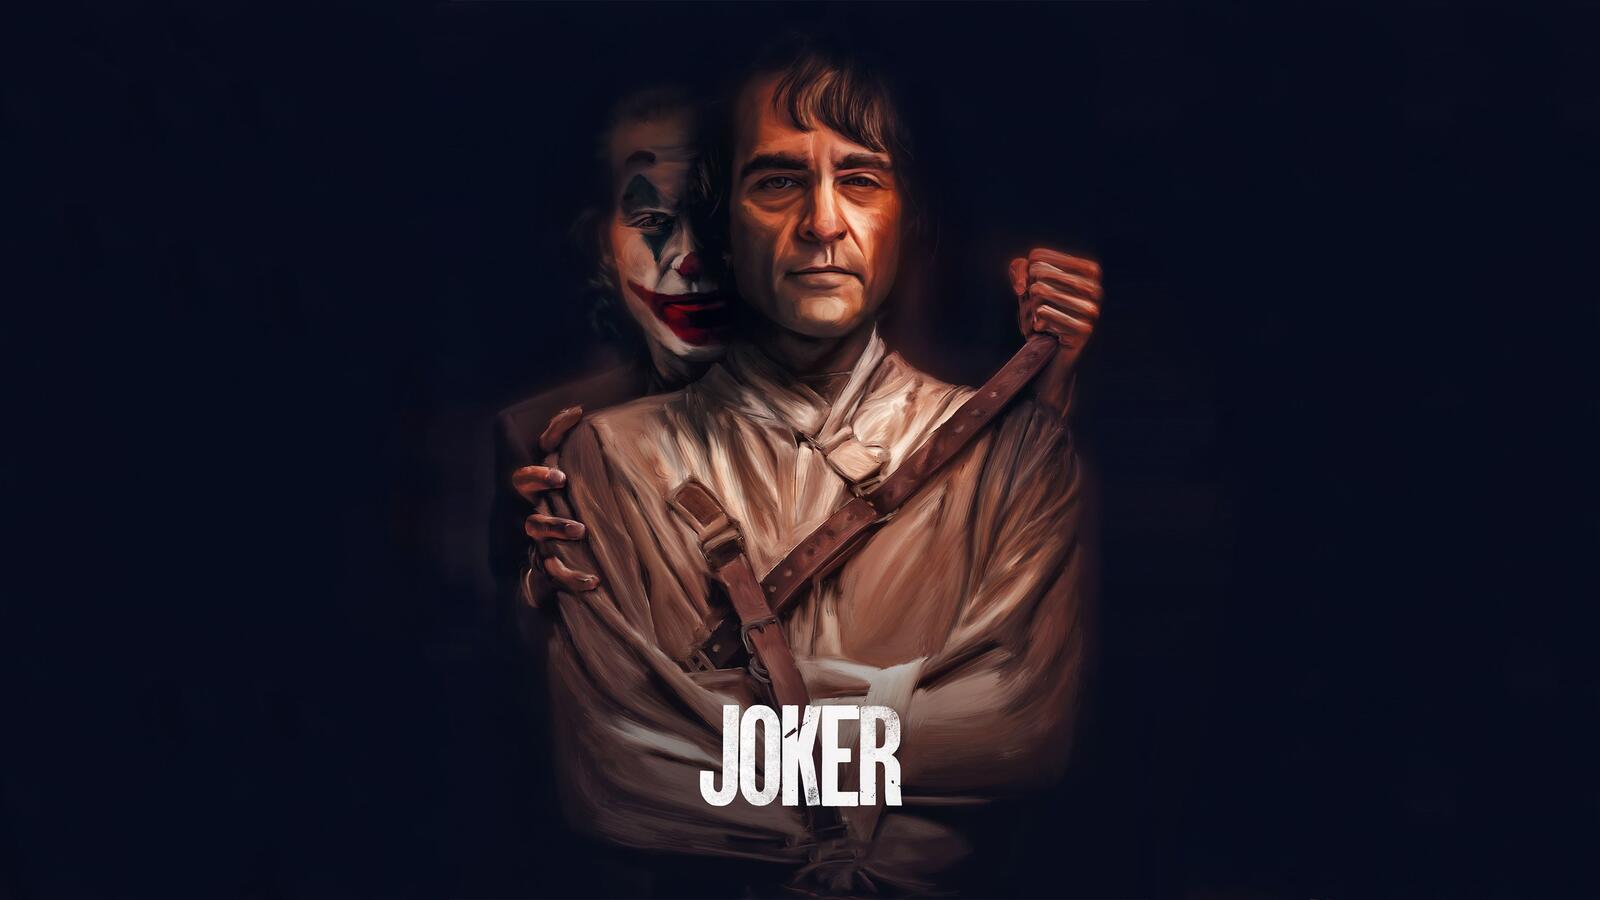 Wallpapers Joker movie joker actor on the desktop